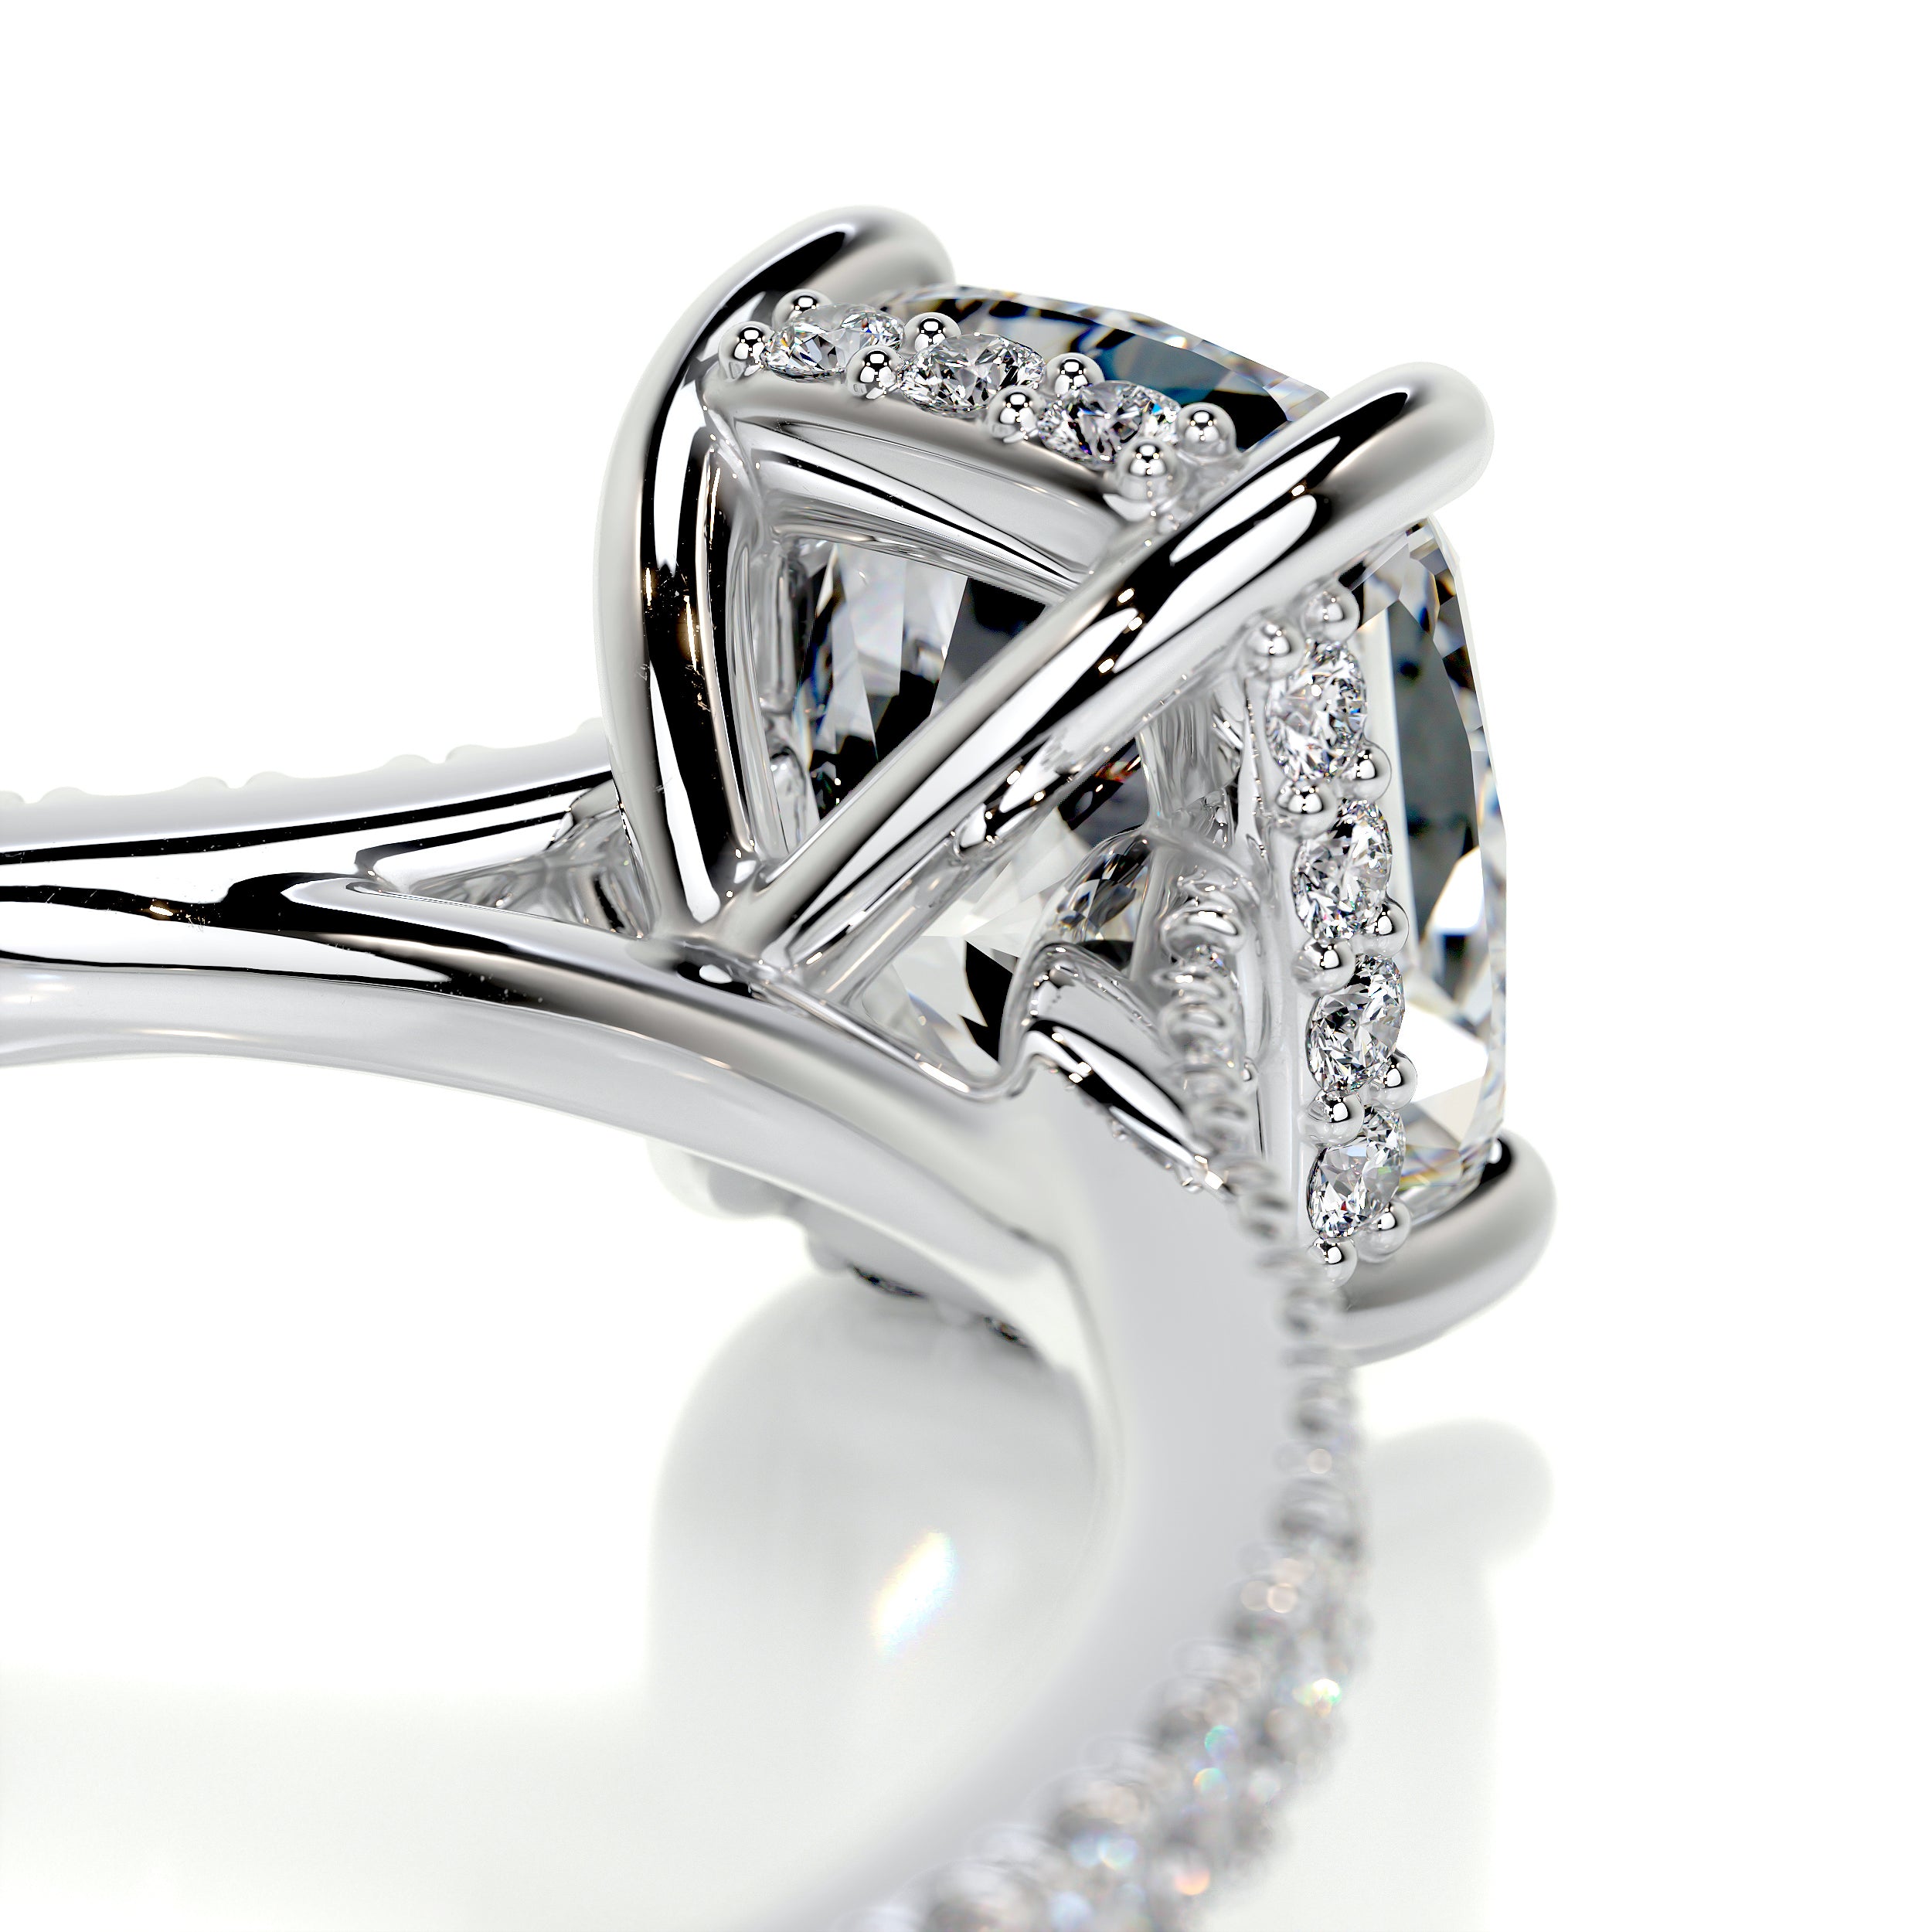 Deandra Diamond Engagement Ring -18K White Gold